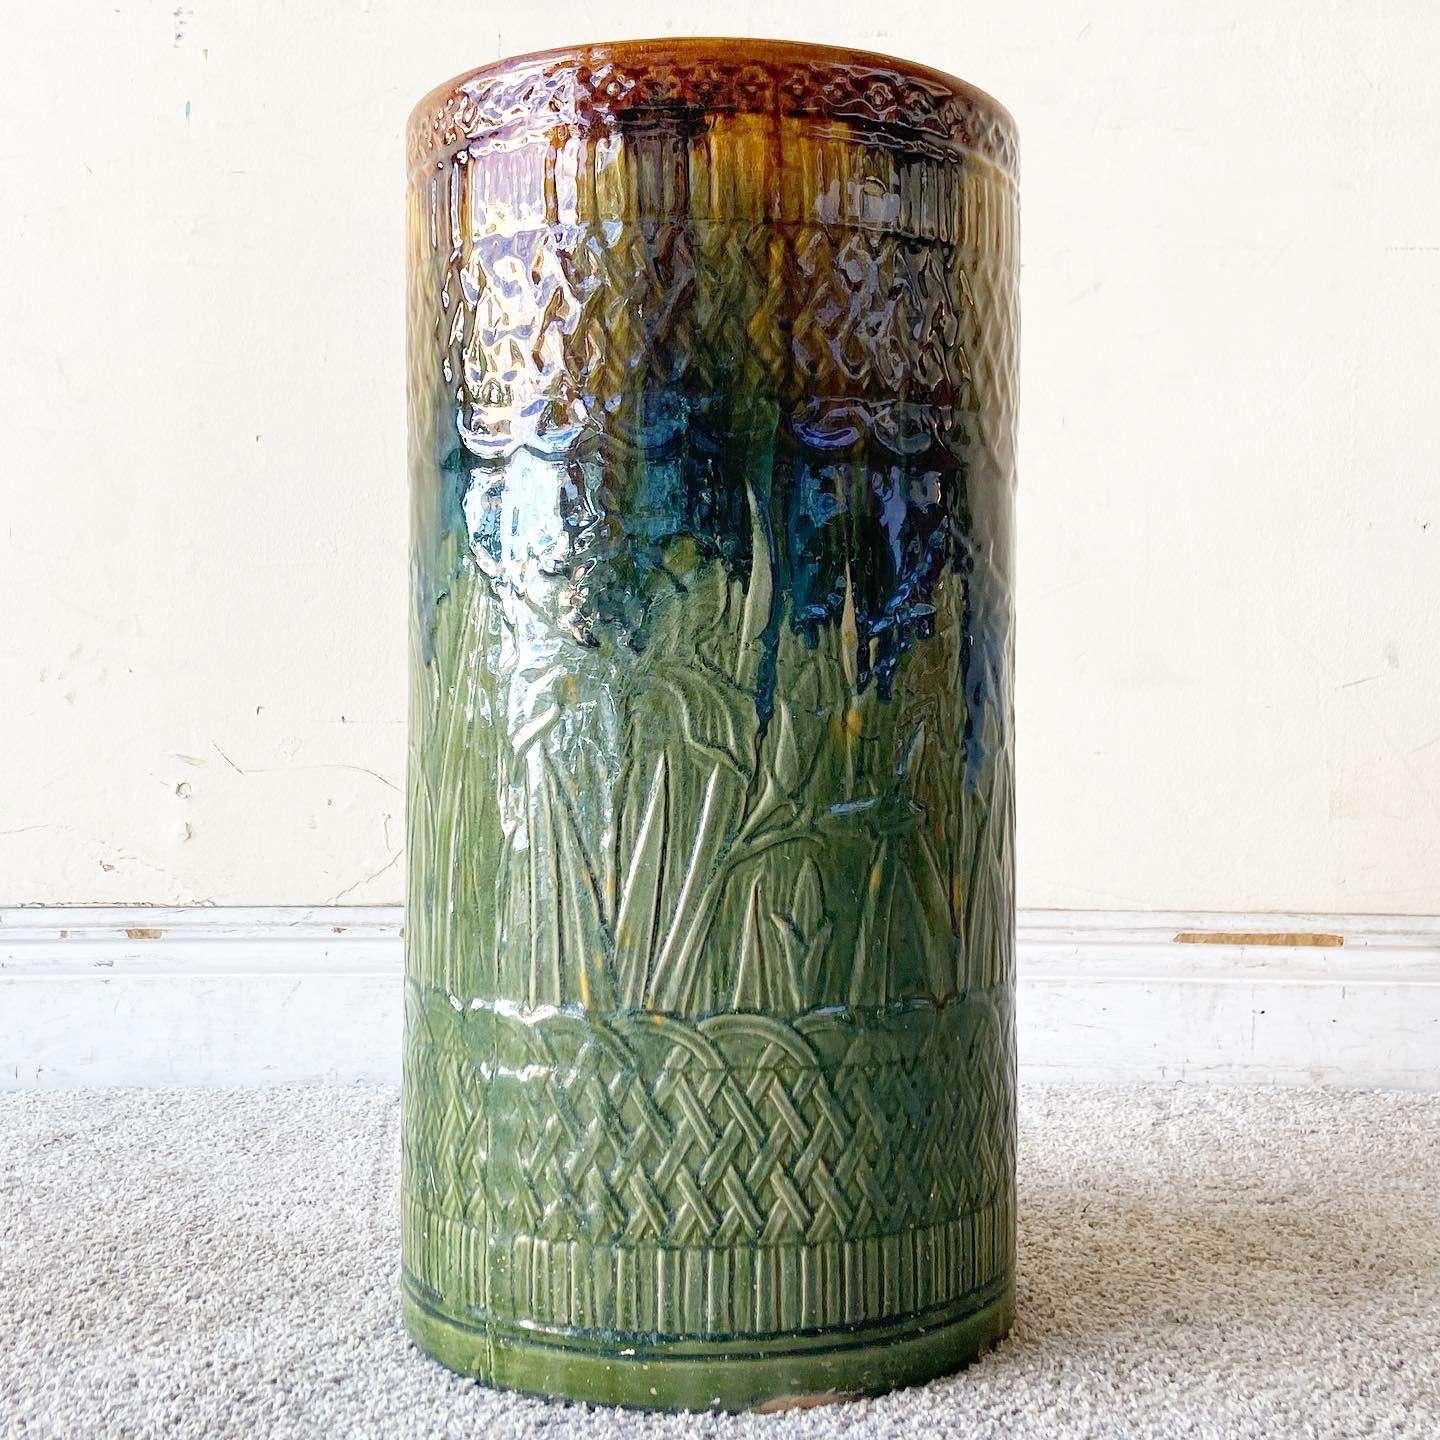 Erstaunlich Vintage Boho chic glasierten Ton Bodenvase. Das Äußere ist geätzt und in Grün, Orange und Blau gehalten.
